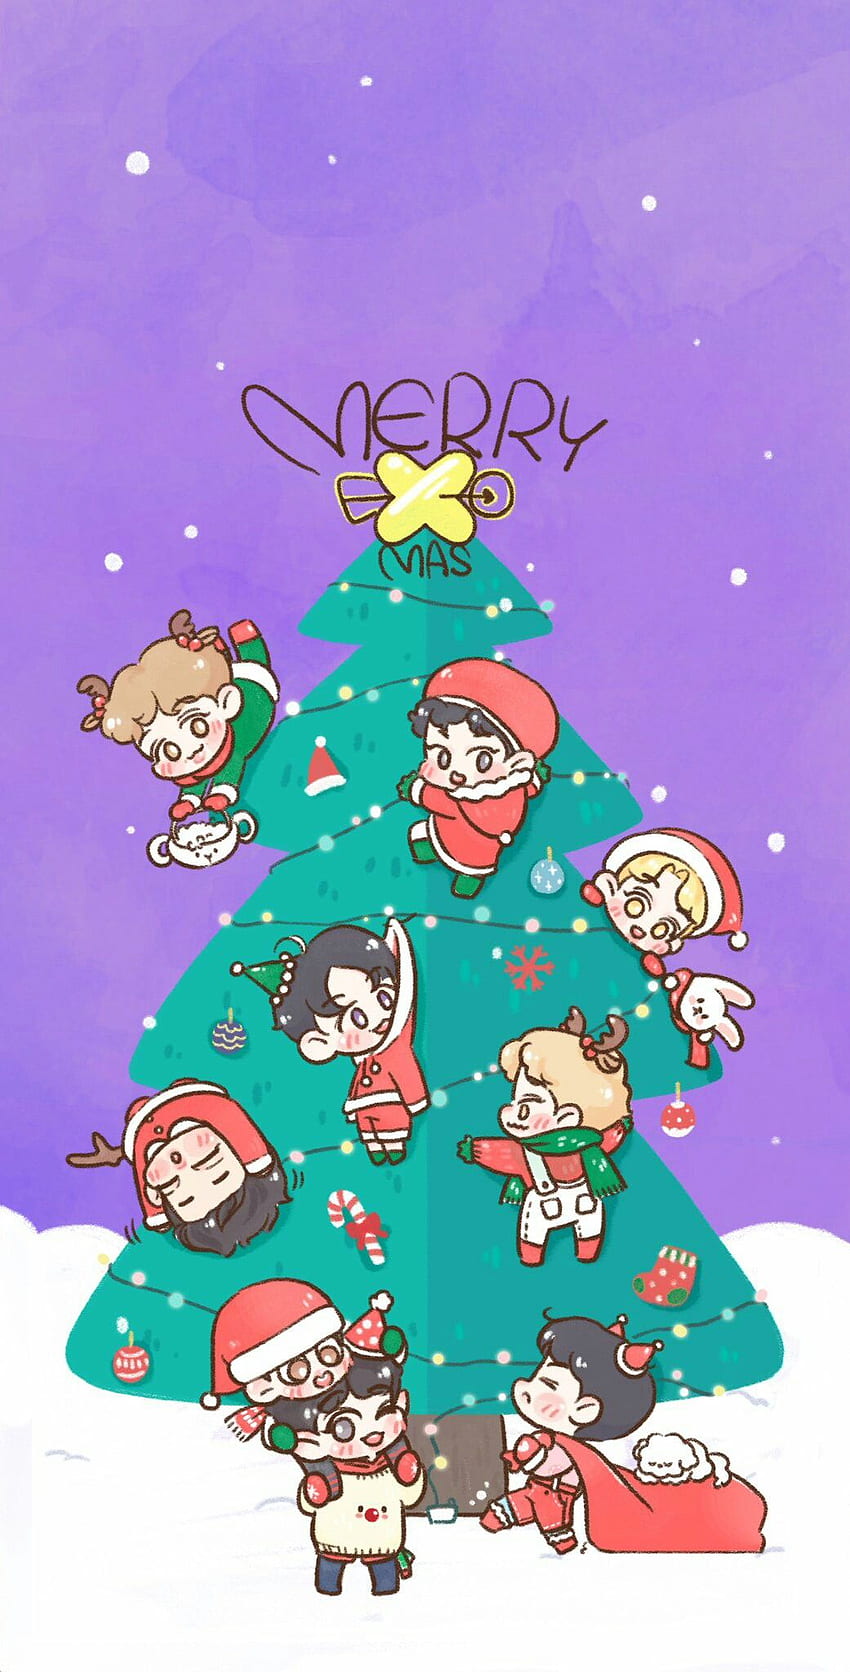 EXO ❤️. Exo chibi fanart, Exo cartoon, Exo fan art, EXO Christmas HD phone wallpaper